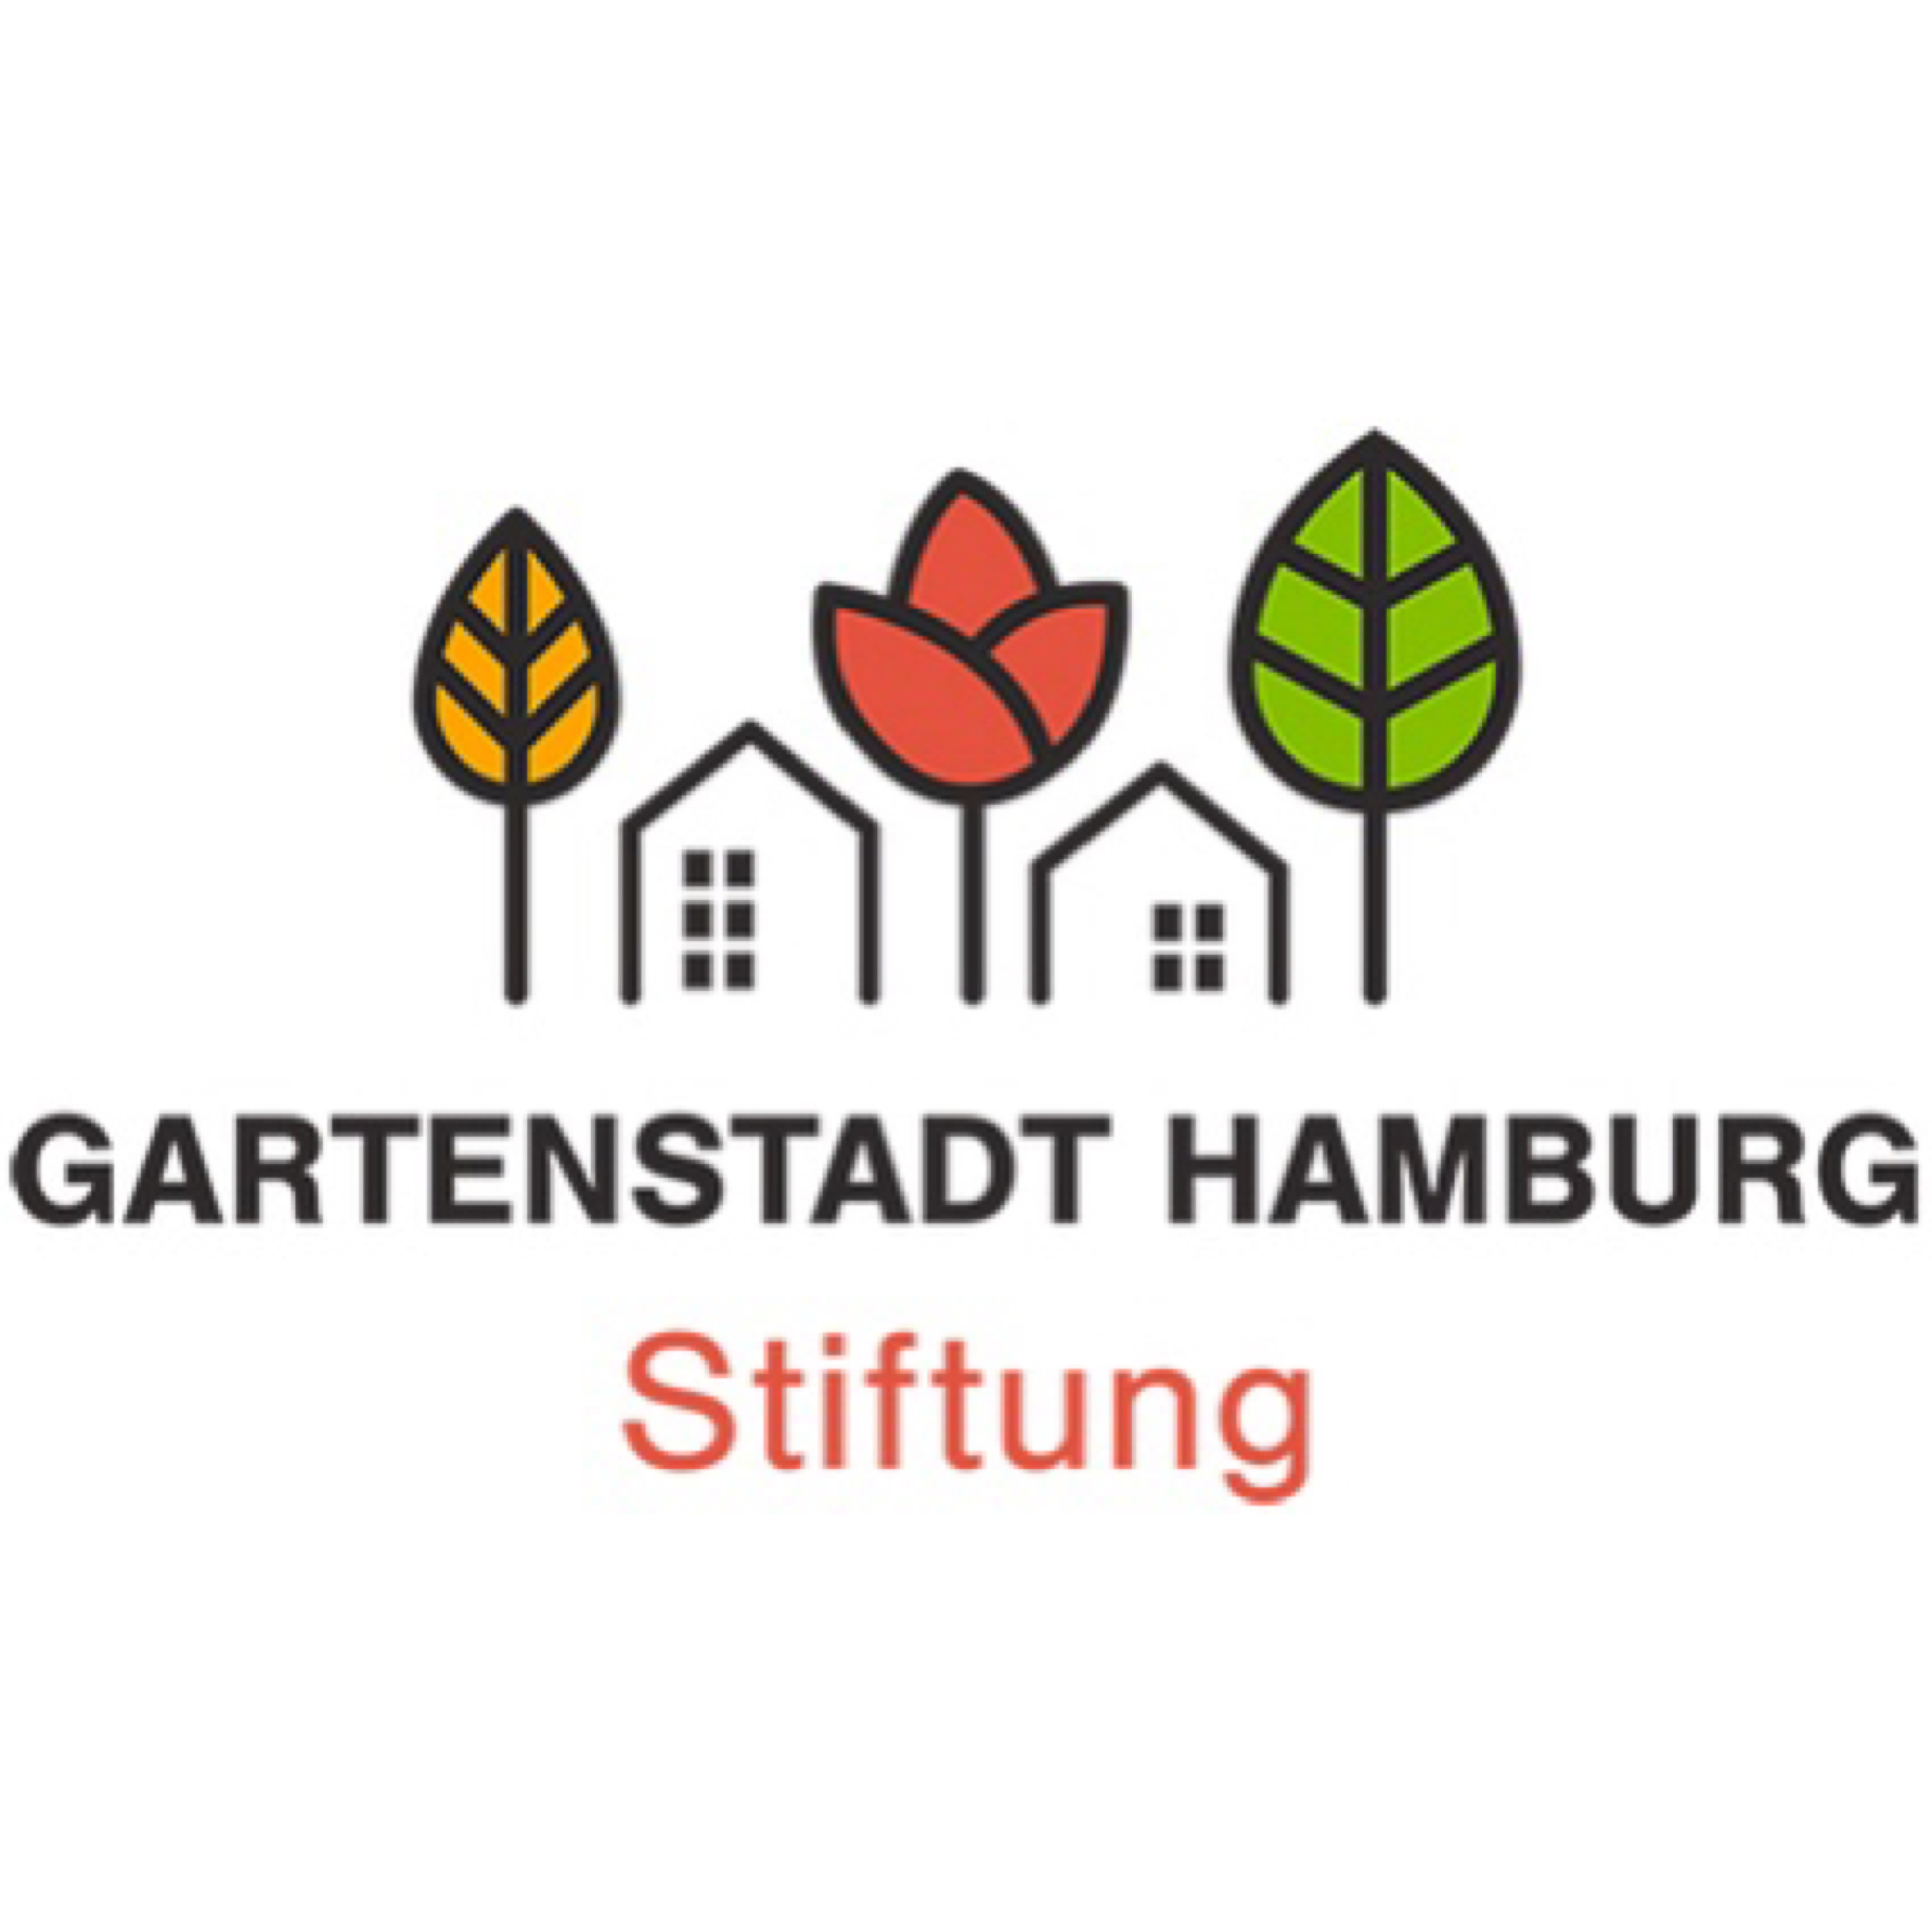 Gartenstadt Hamburg Stiftung gegründet